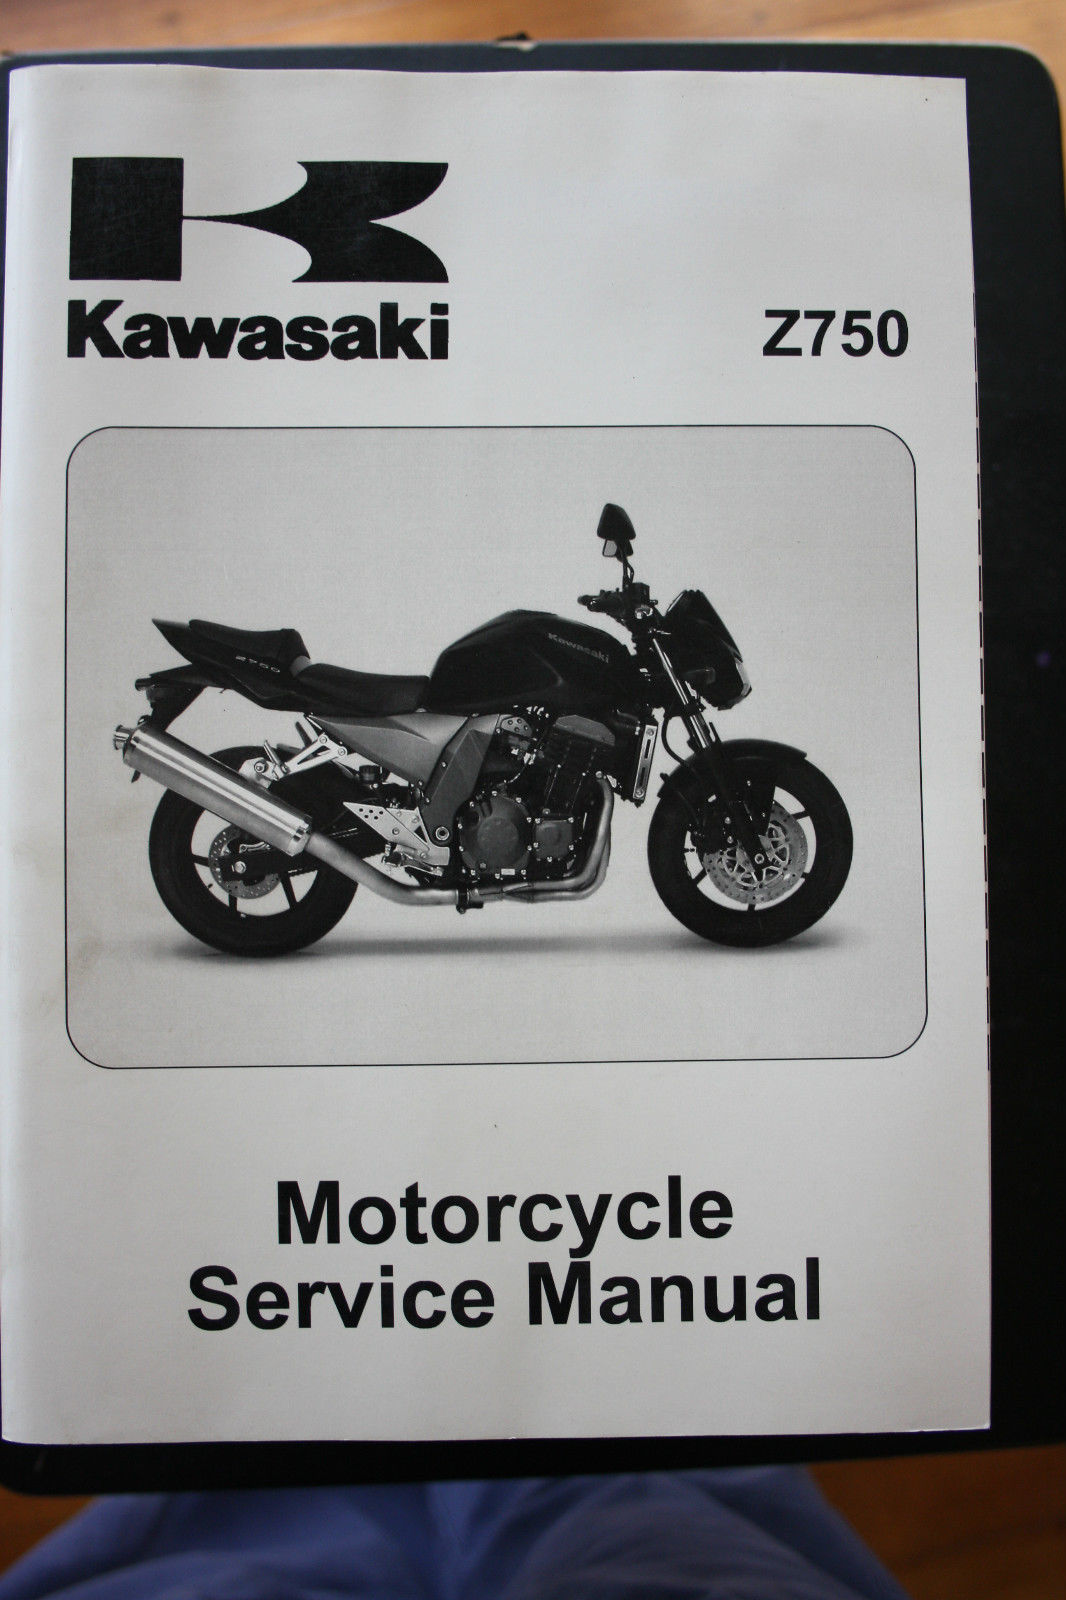 GENUINE KAWASAKI SERVICE WORKSHOP MANUAL 2004-2006 Z750 - Kawasaki